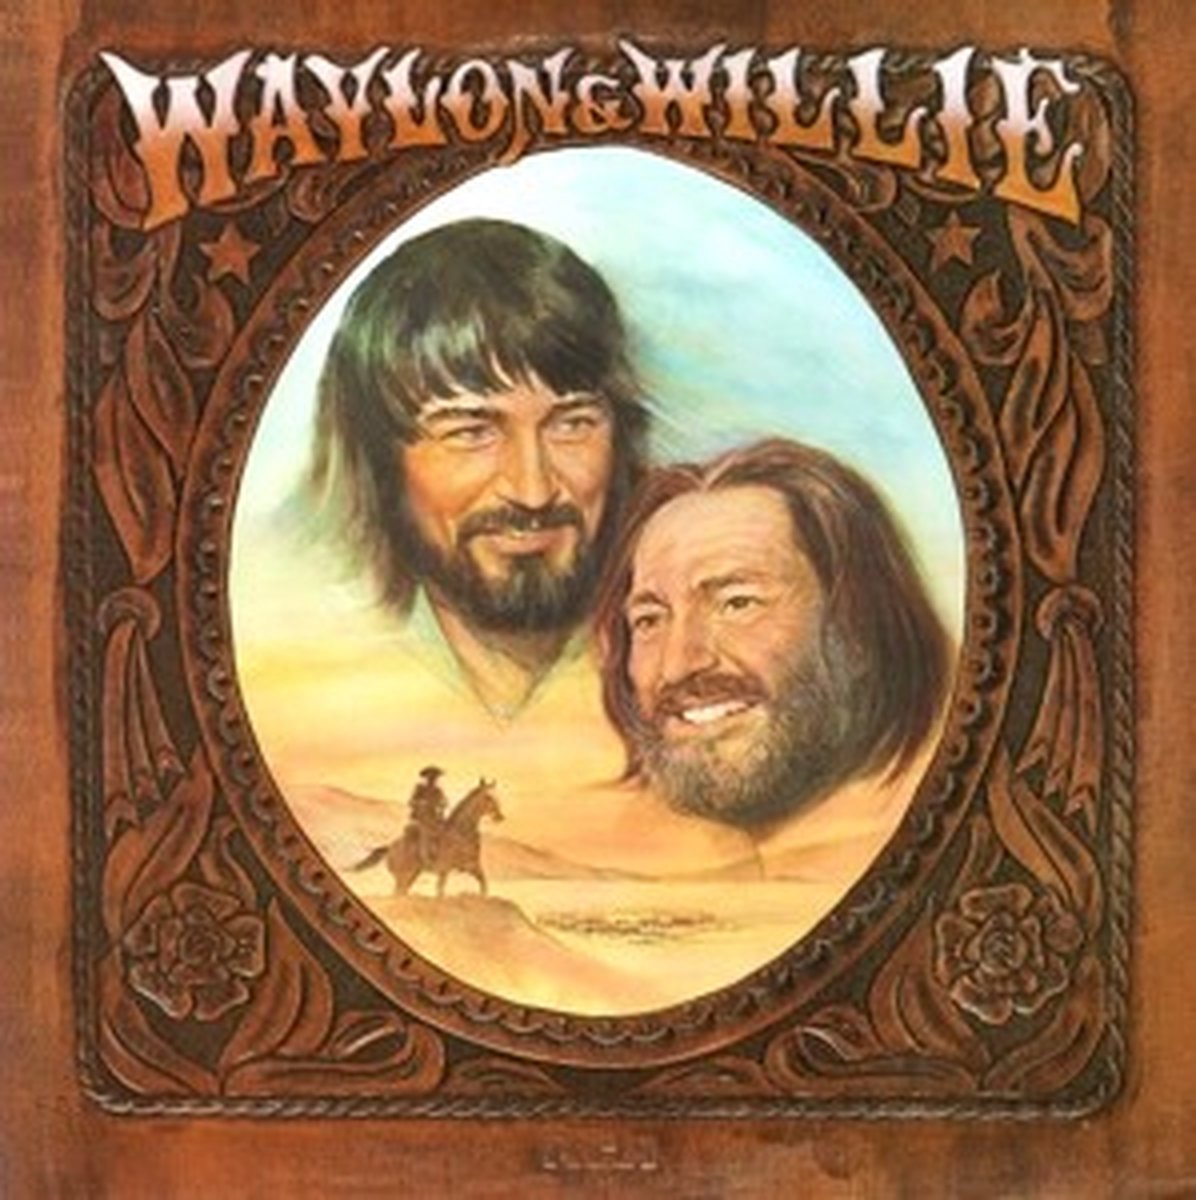 Waylon Jennings & Willie Nelson - Waylon & Willie (CD) - WAYLON JENNINGS & WILLIE NELSON